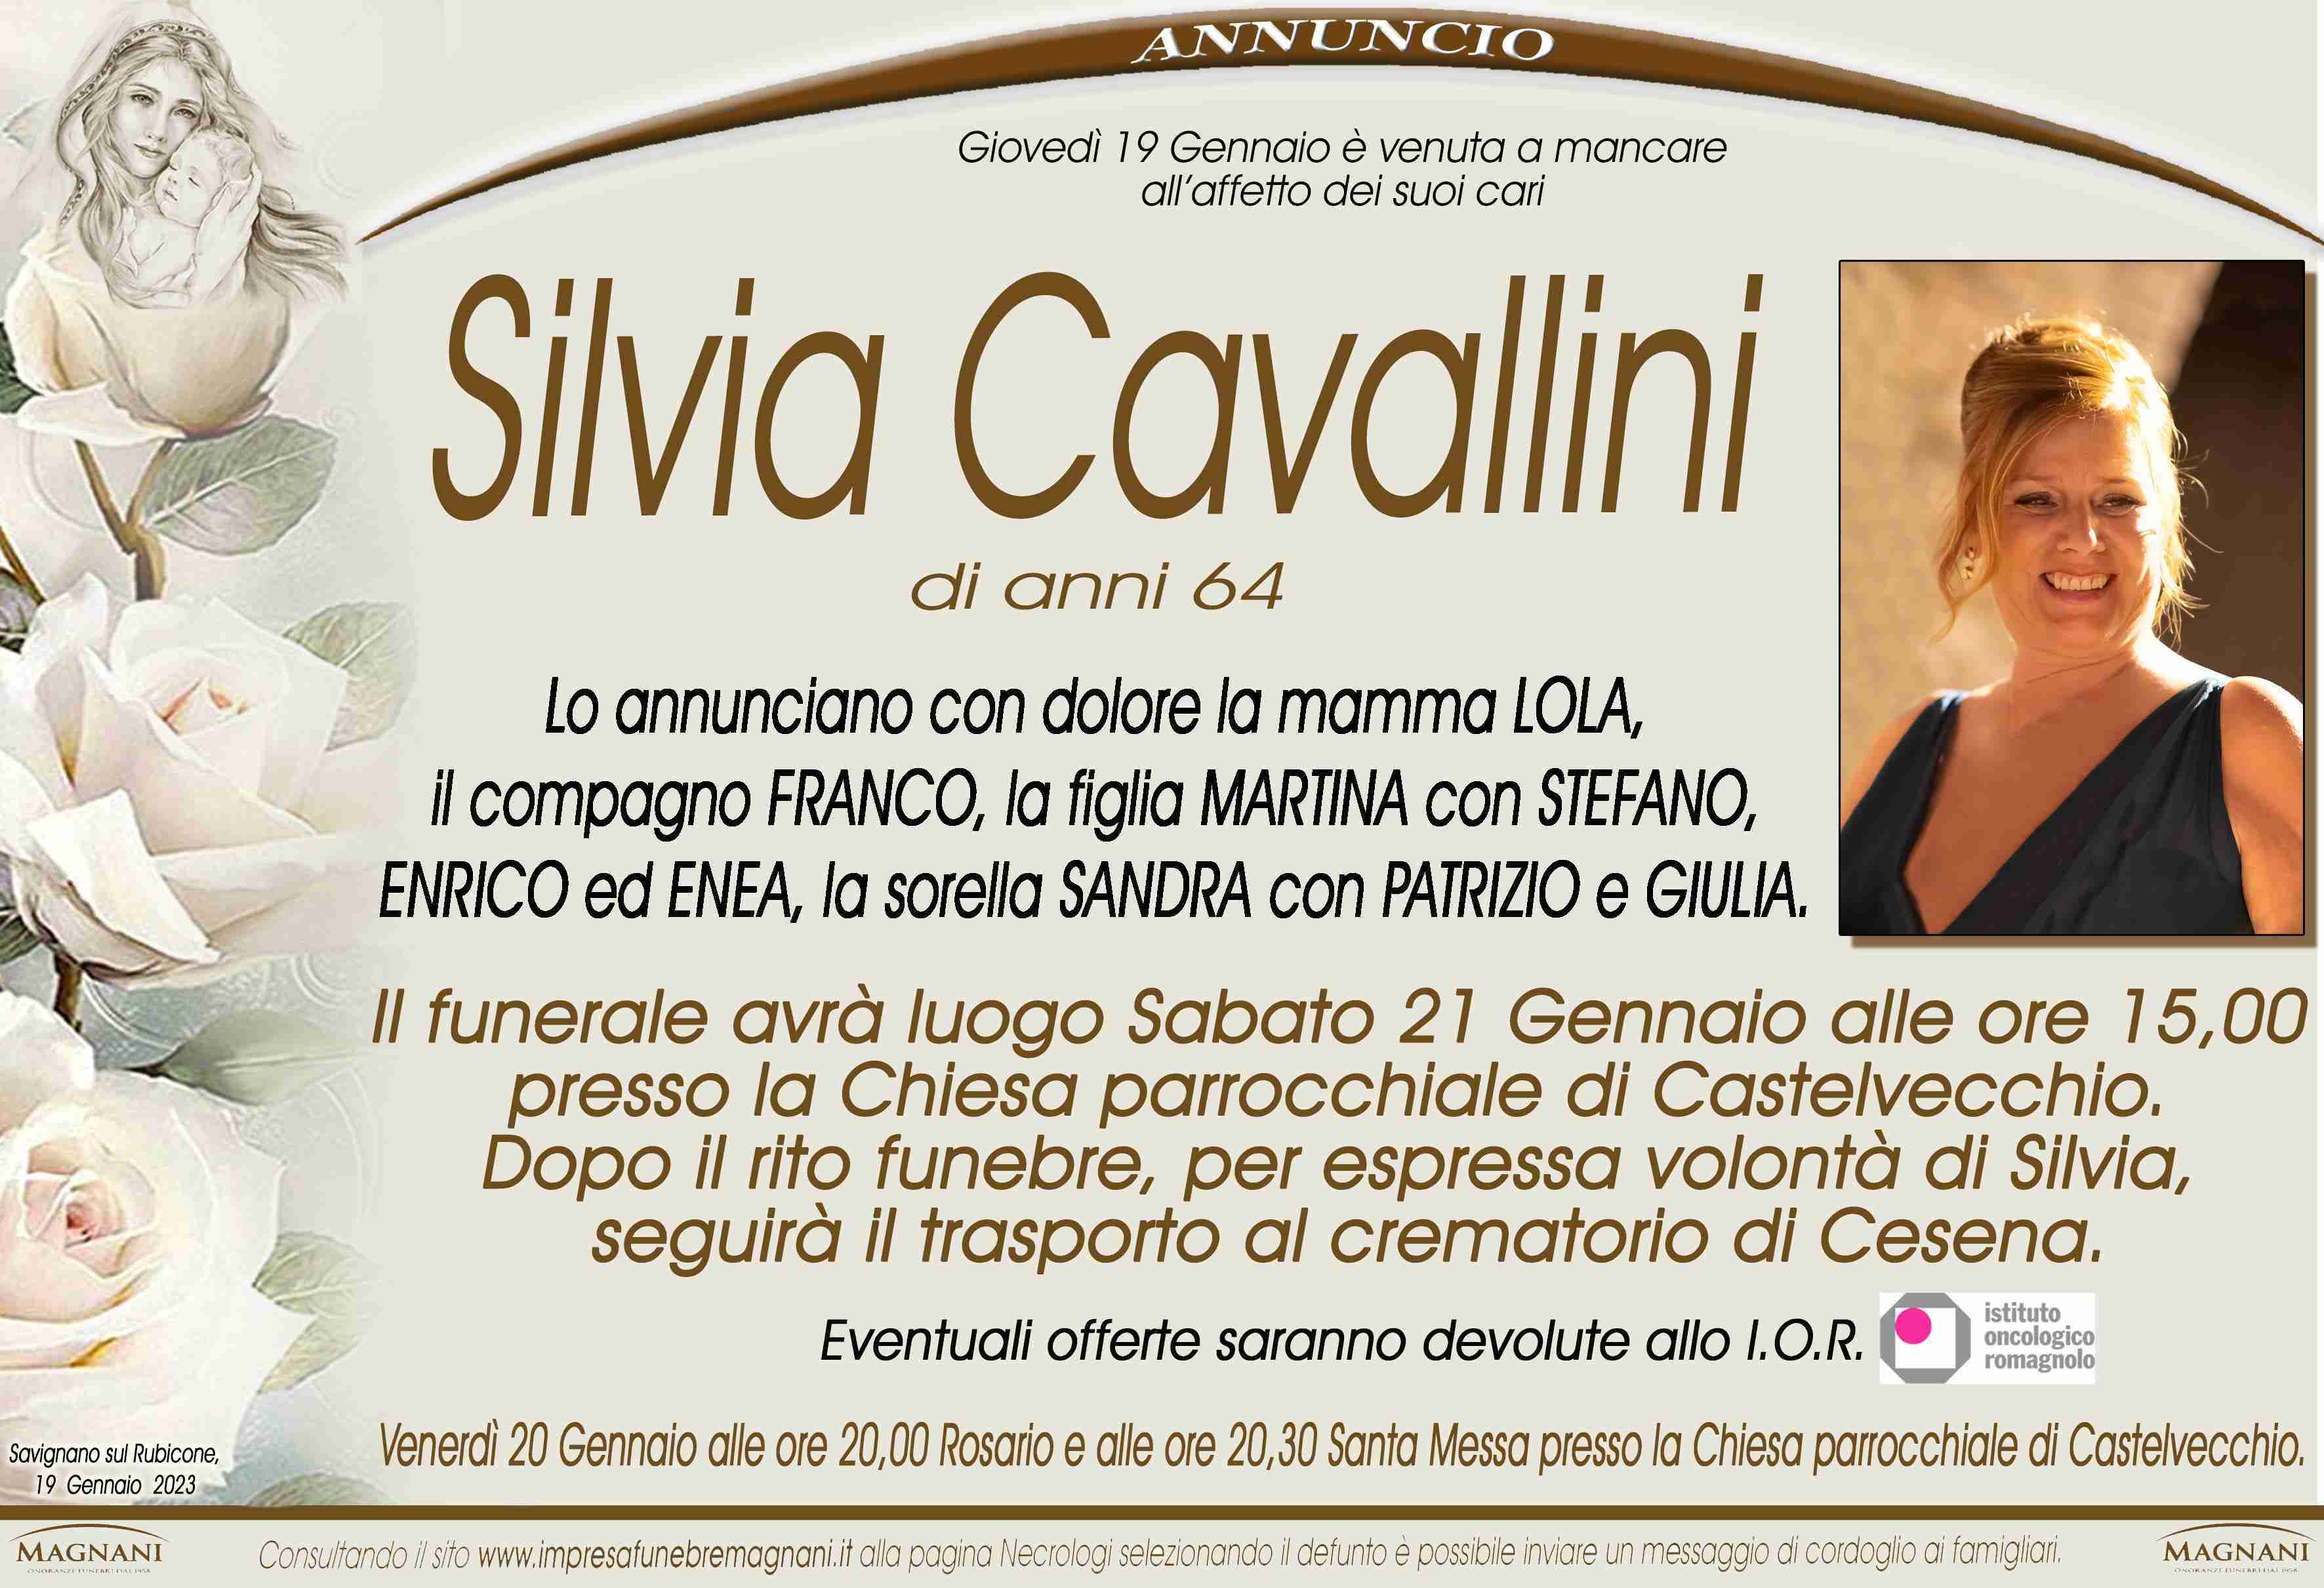 Silvia Cavallini